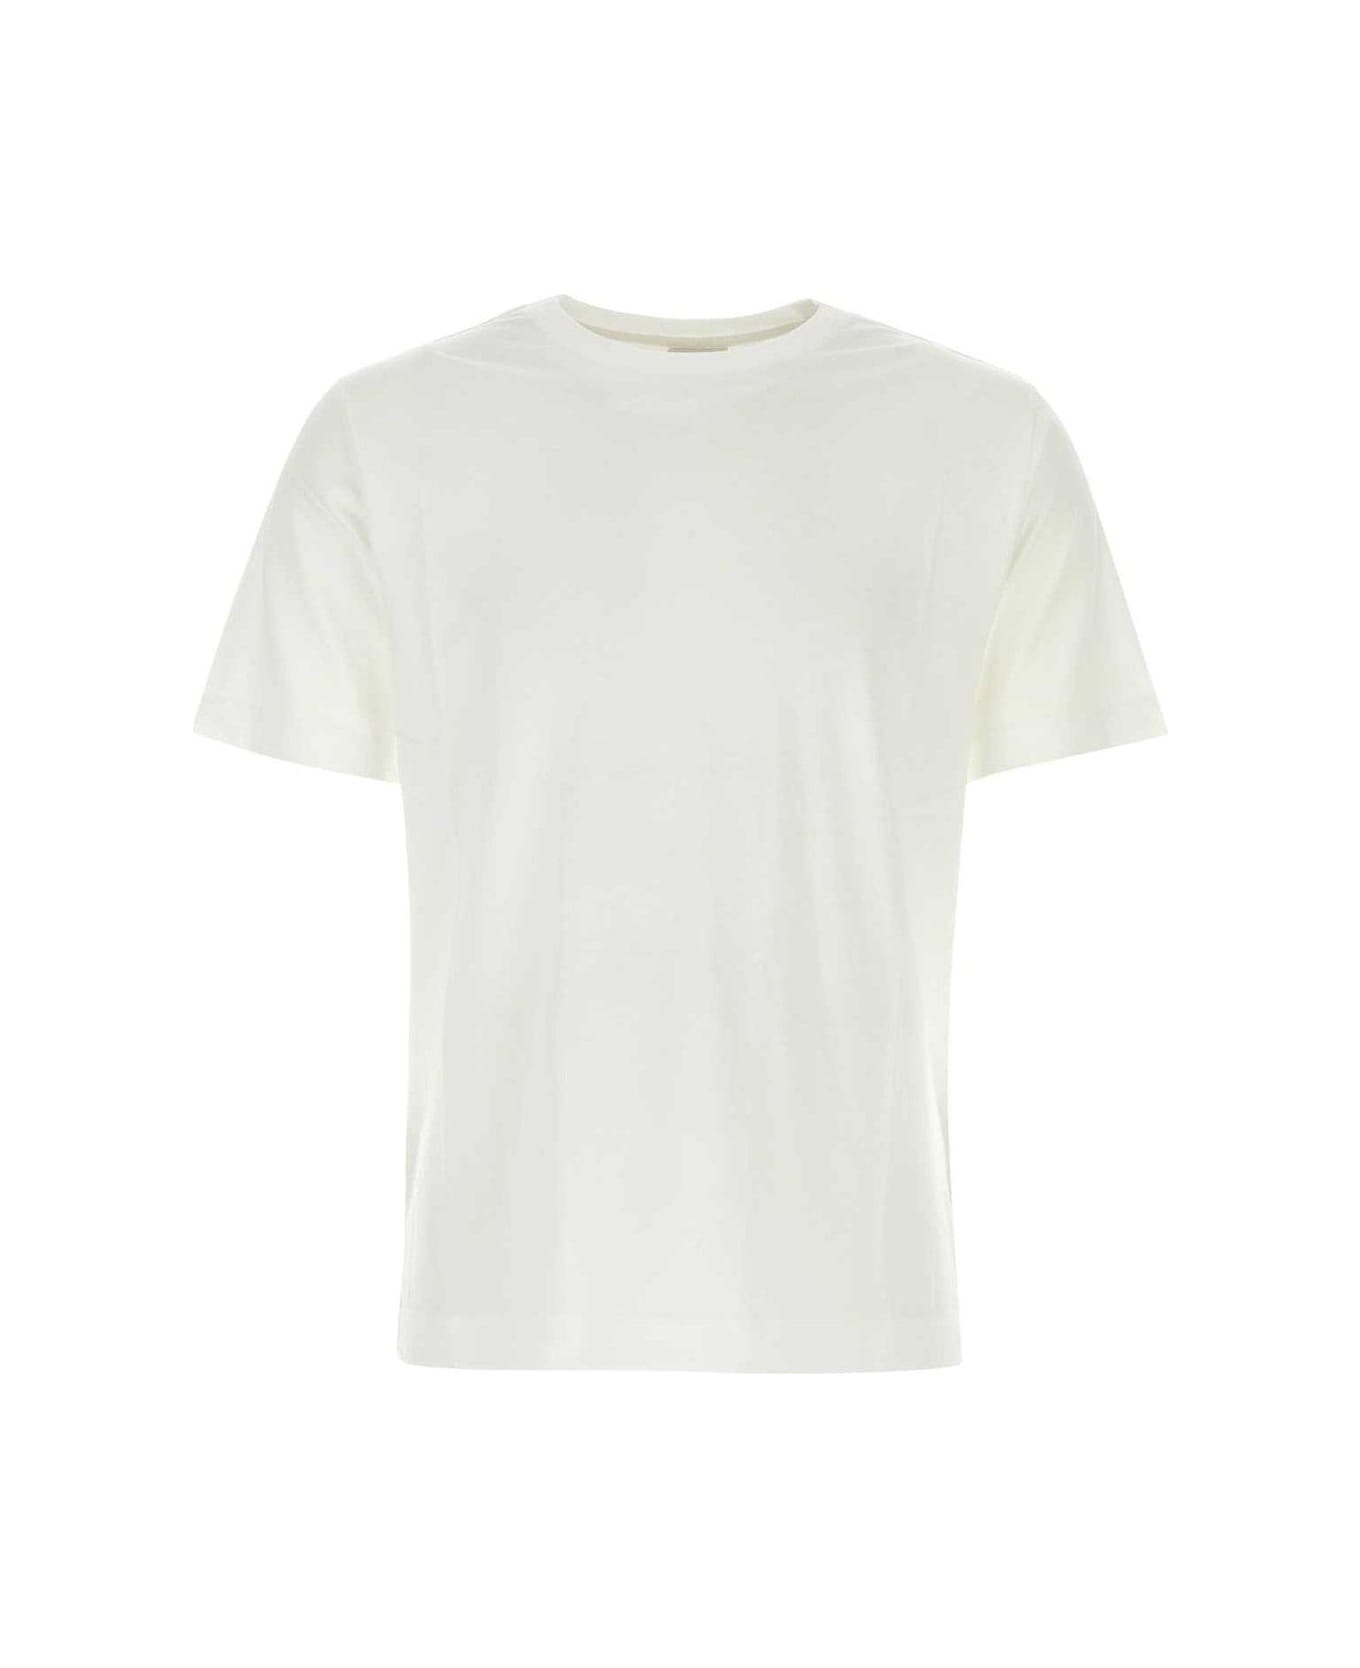 Dries Van Noten Short Sleeved Crewneck T-shirt - Bianco シャツ